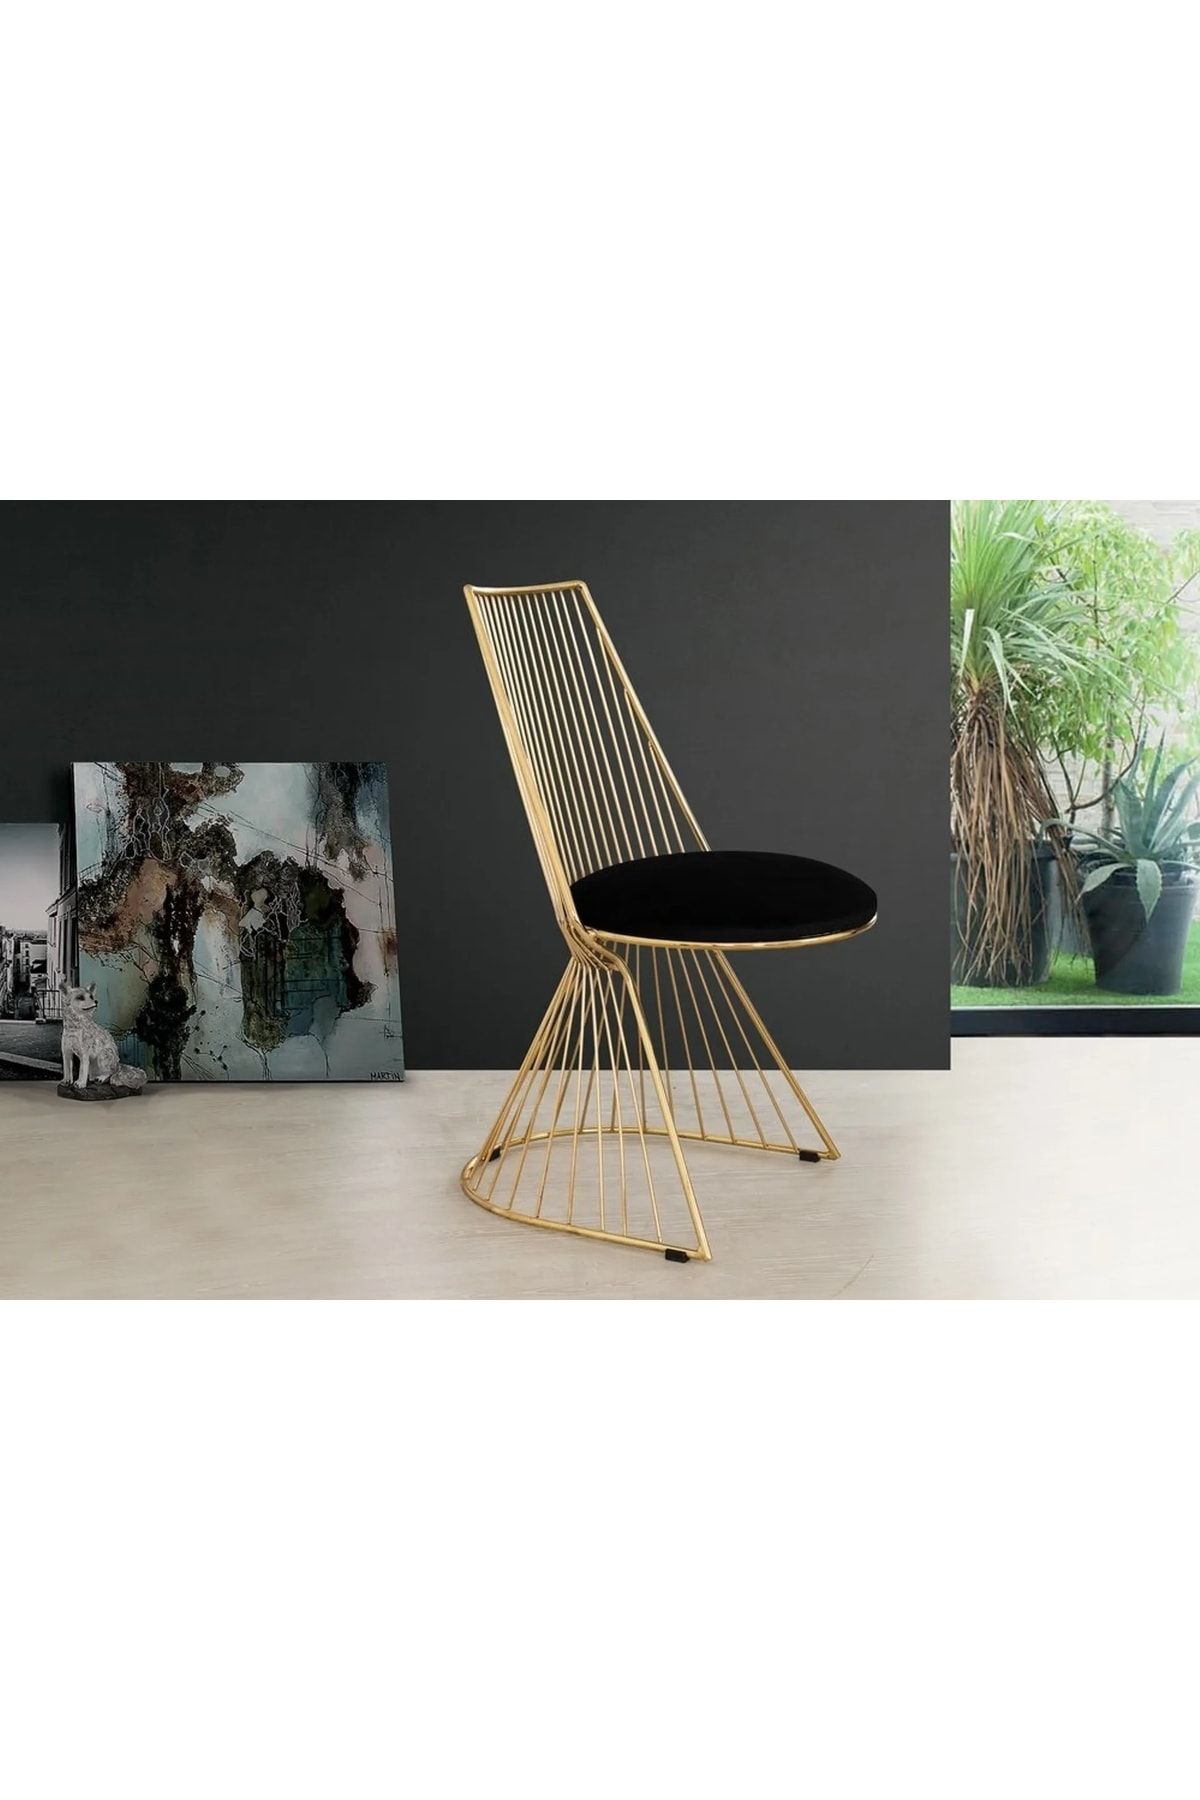 burenze Modern Luxury Exclusive Metal Gold Sarı Ladre Sandalye Şık Tasarım Siyah Kadife Kumaş